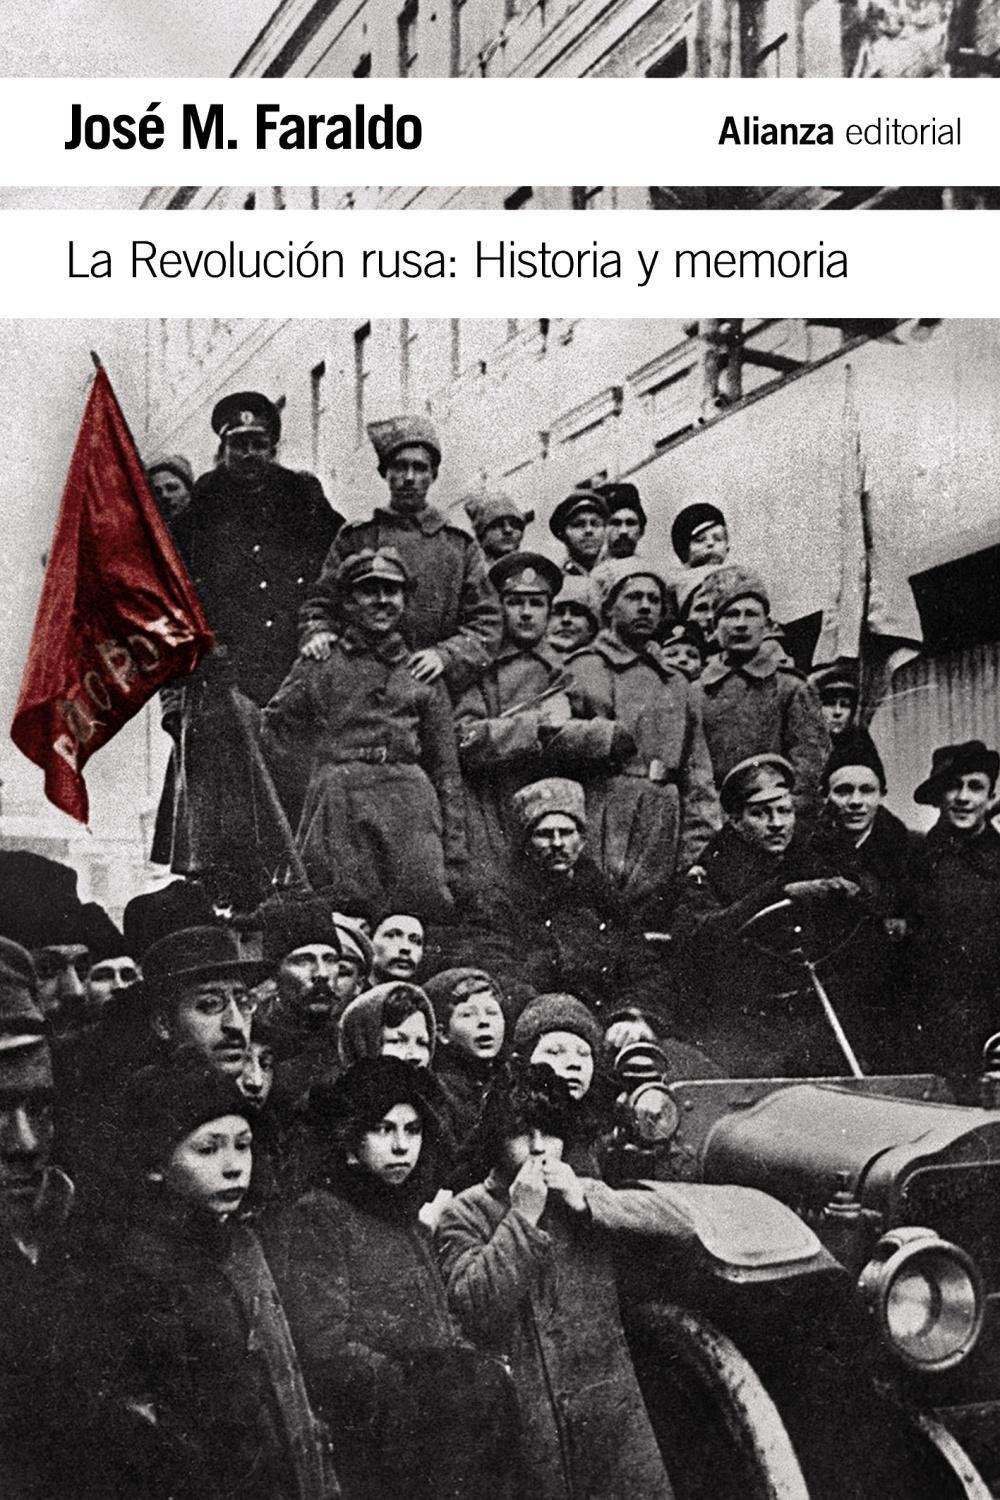 La Revolución rusa "Historia y memoria". 